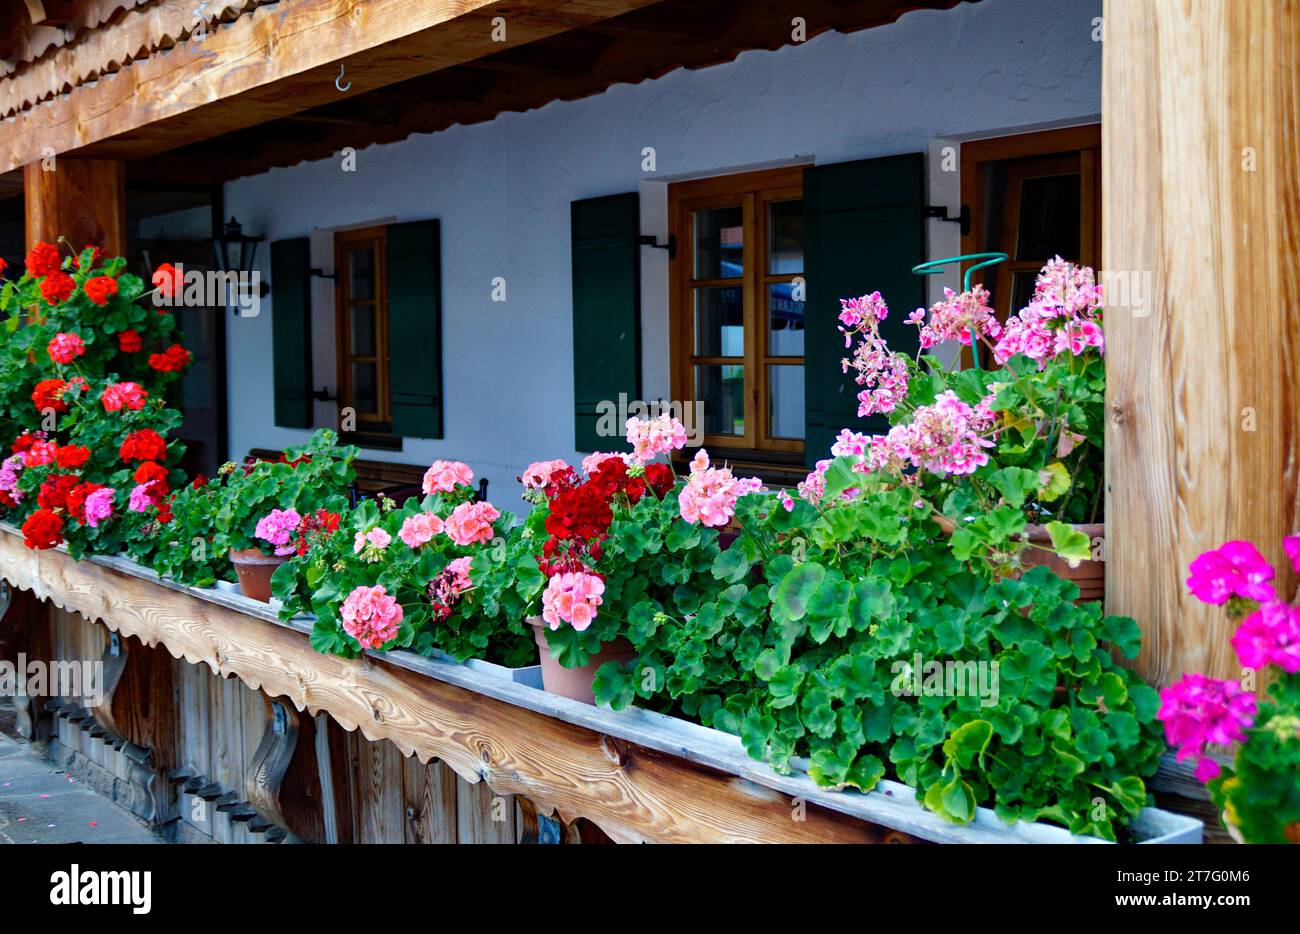 Scène idyllique avec une ferme traditionnelle bavaroise rustique alpine avec géraniums rouges sur le rebord du balcon à Schwangau dans les Alpes bavaroises en été Banque D'Images